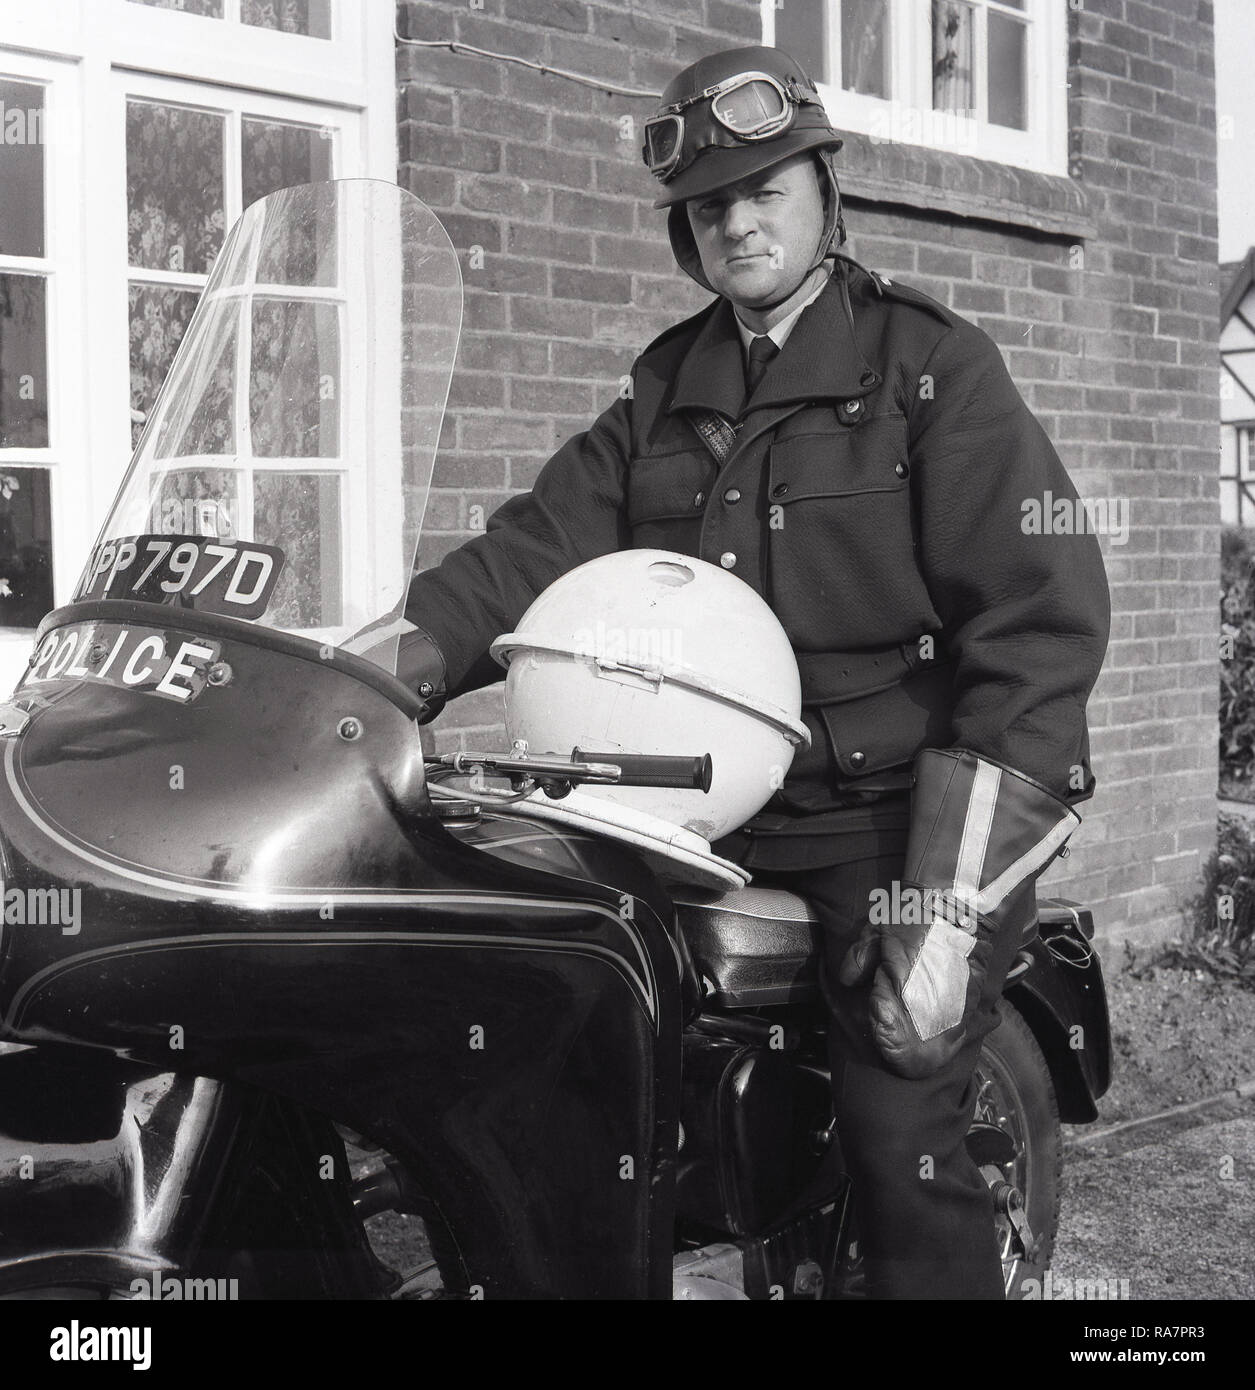 1967, en policier avec casque et lunettes assis sur une moto de police, à l'extérieur de la maison, grâce à une soucoupe volante 'fait maison' sur ses genoux, England, UK. À la fin des années 60, la Grande-Bretagne a connu un 'OVNI' craze, encouragés par des émissions de télévision populaires comme un Dr Qui et ce vu beaucoup de mécanique DIY tentent de créer leur propre. Banque D'Images